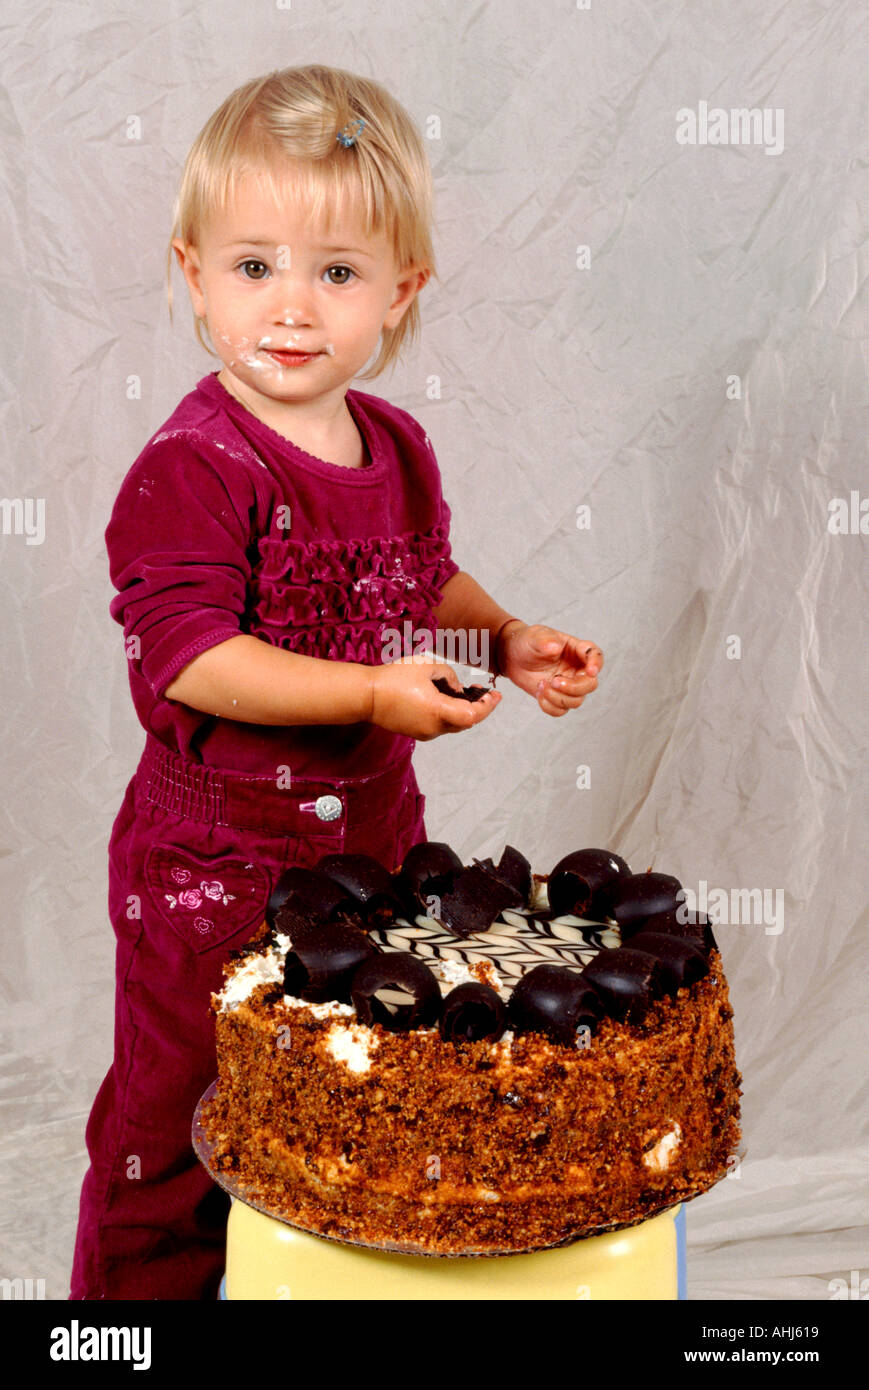 Festa di compleanno per bambini torta alla frutta banana kiwi fragola e arancione babysitting bambino tagliare ritagliato sullo sfondo bianco profilo intaglio Foto Stock